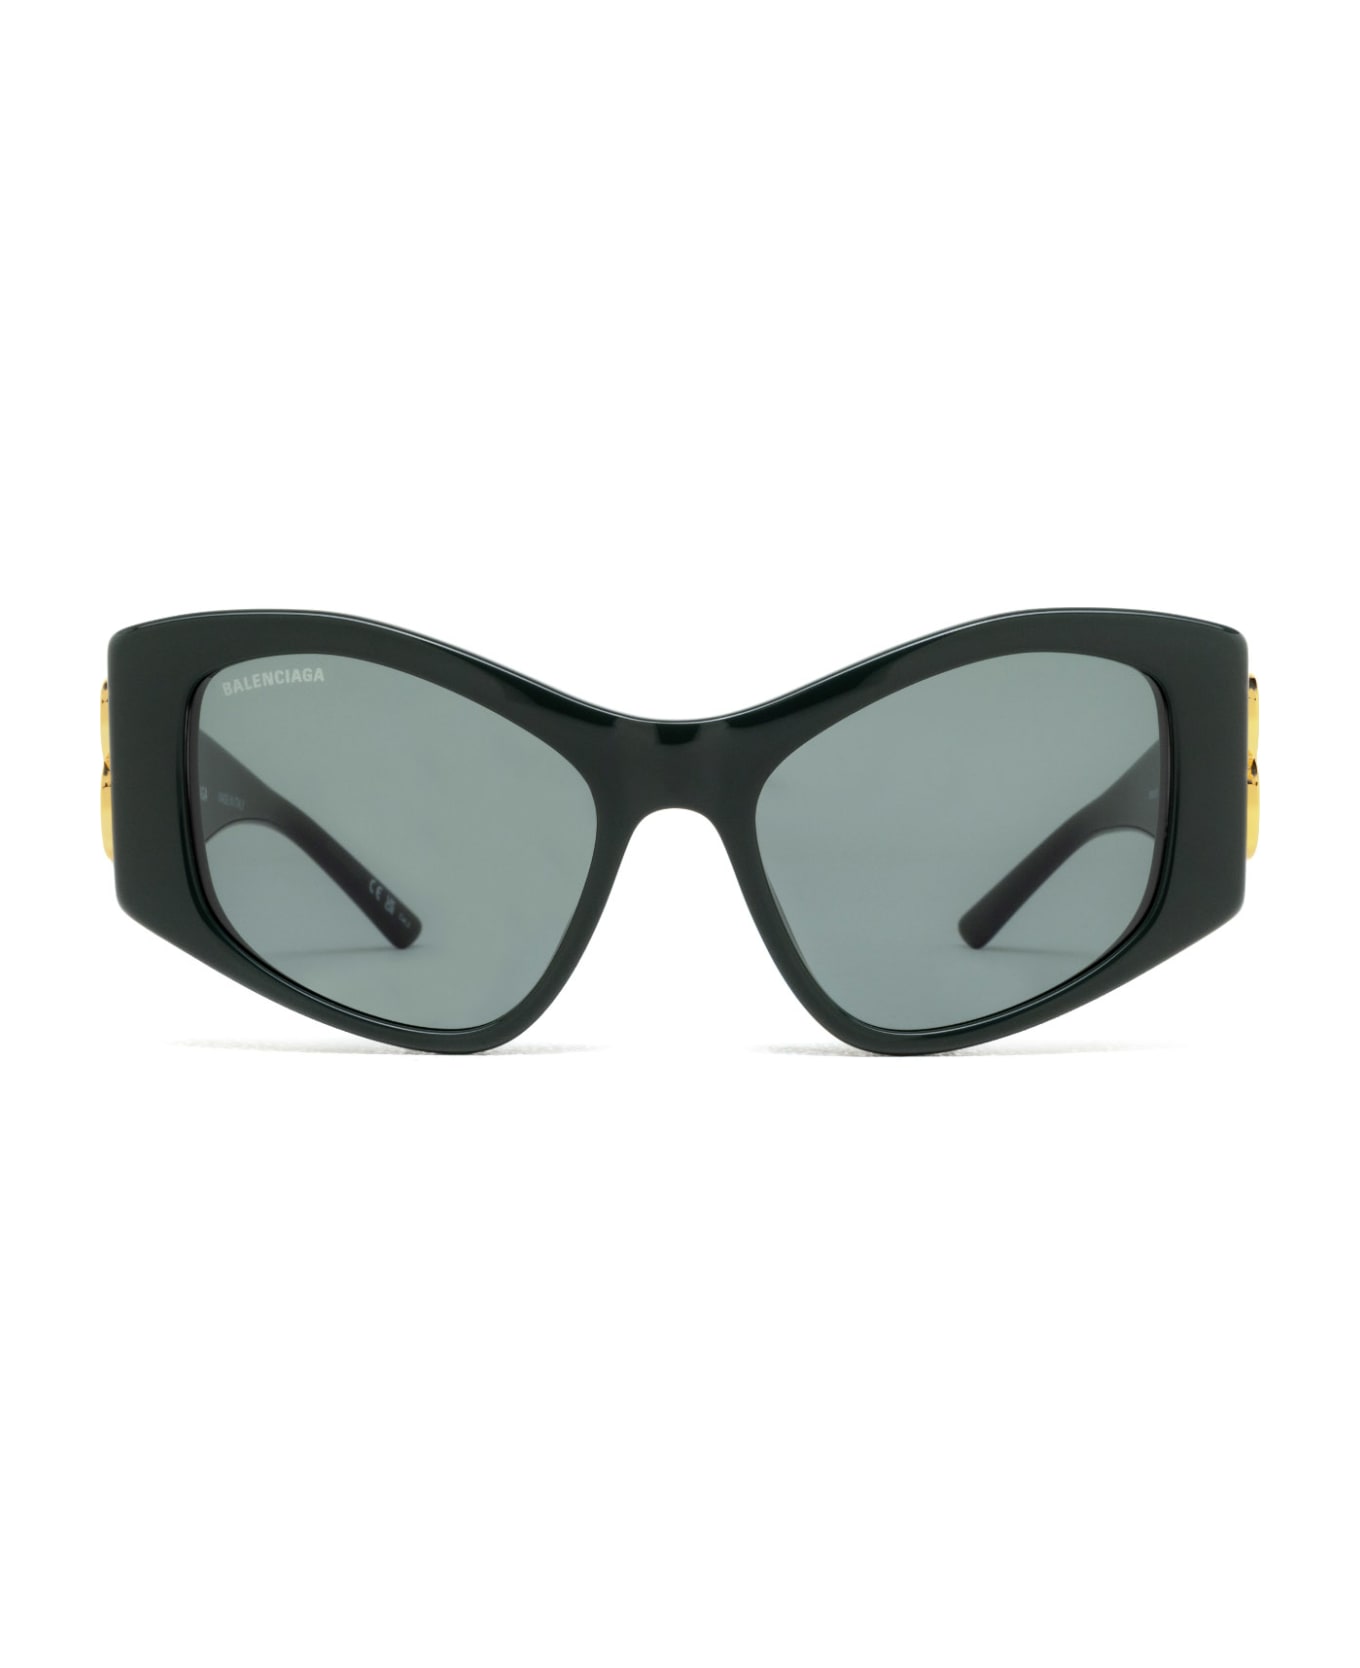 Balenciaga Eyewear Bb0287s Sunglasses - Green